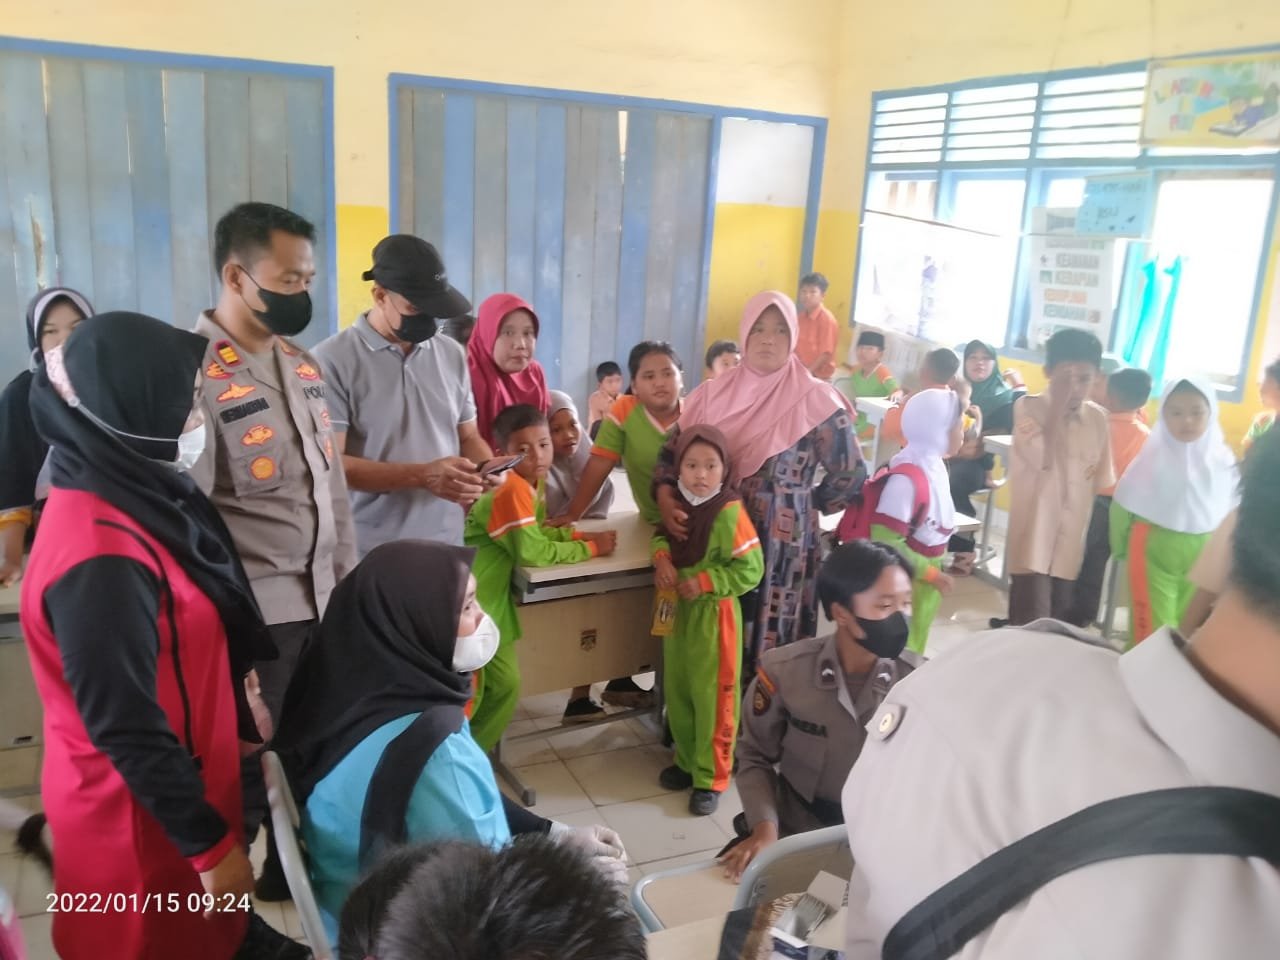 SD Negeri Tanjung Putus Melaksanakan Vaksinasi Covid-19